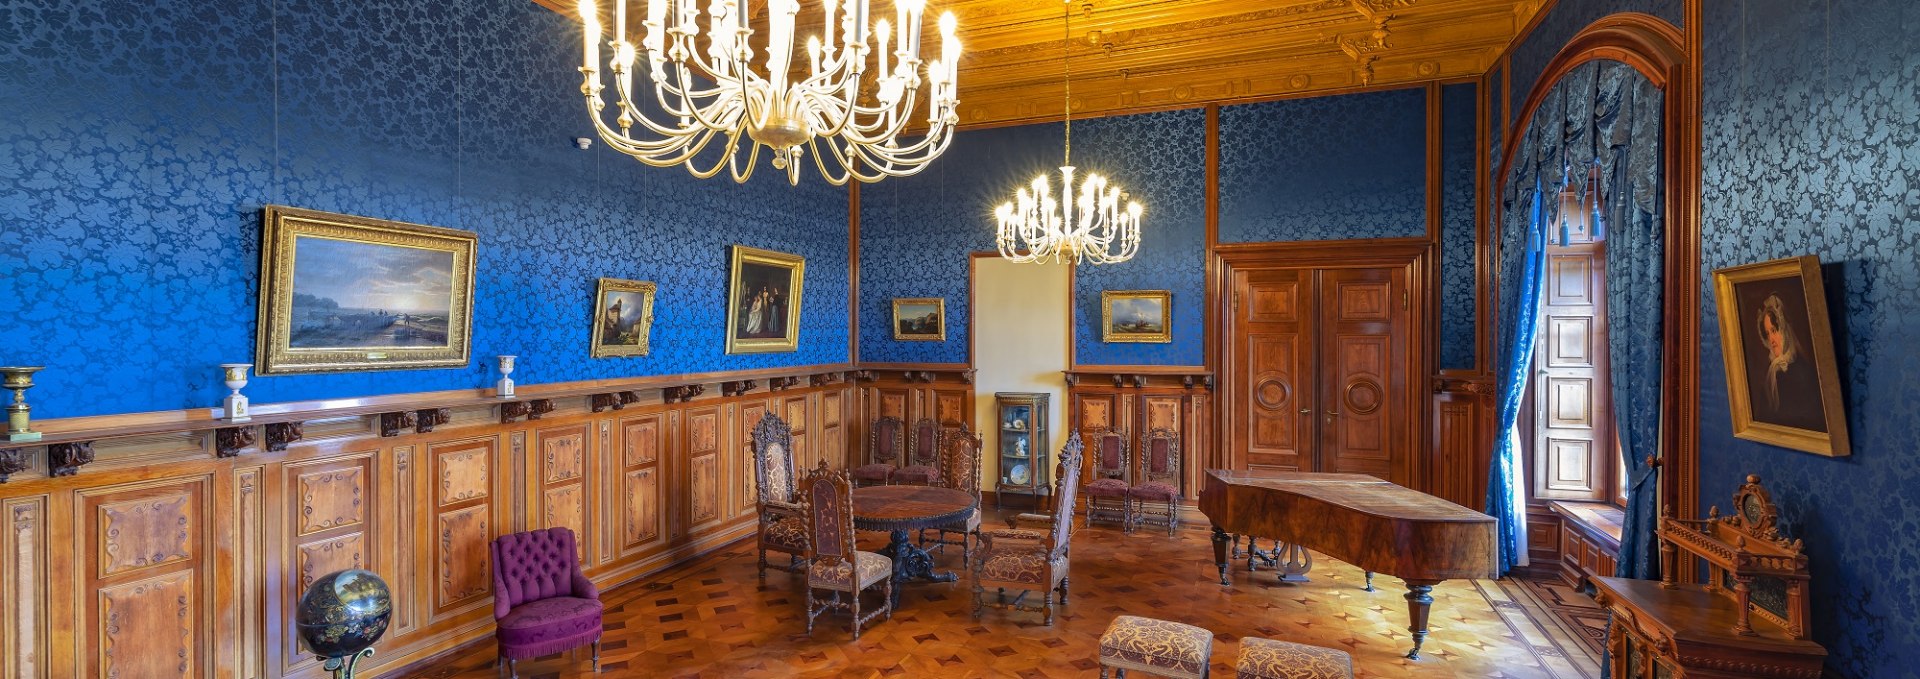 Wohnzimmer im Schweriner Schloss, © Timm Allrich  ©Staatliche Schlösser Gärten und Kunstsammlungen M-V